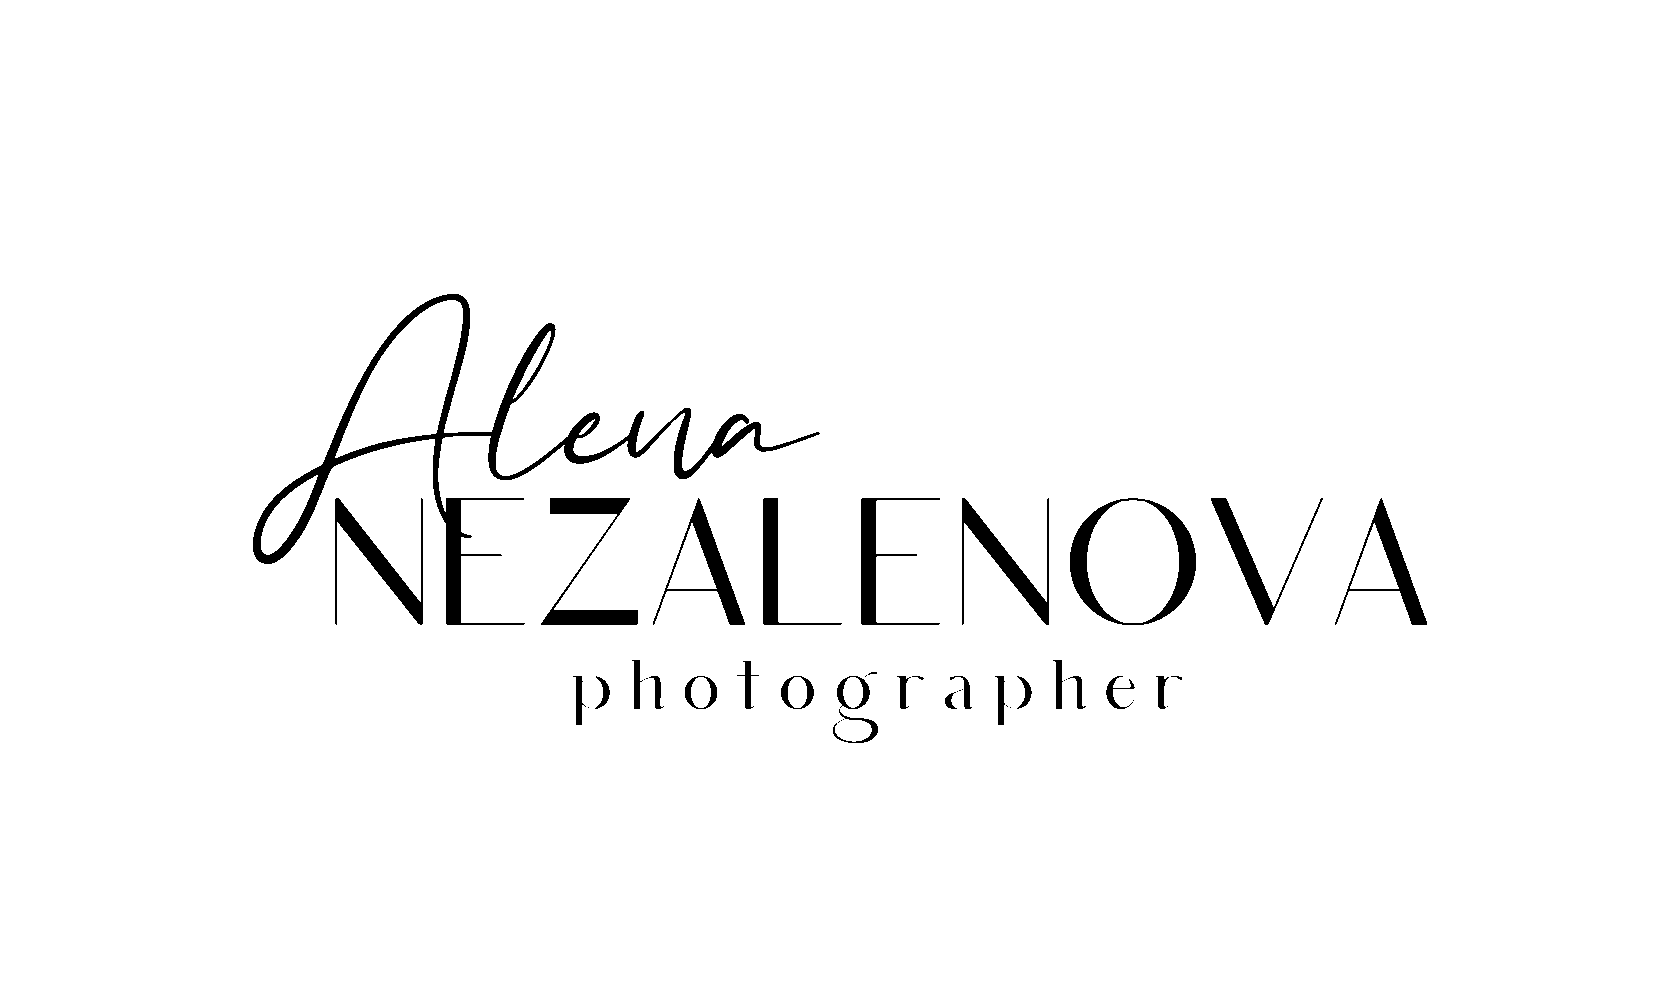  Alena Nezalenova 